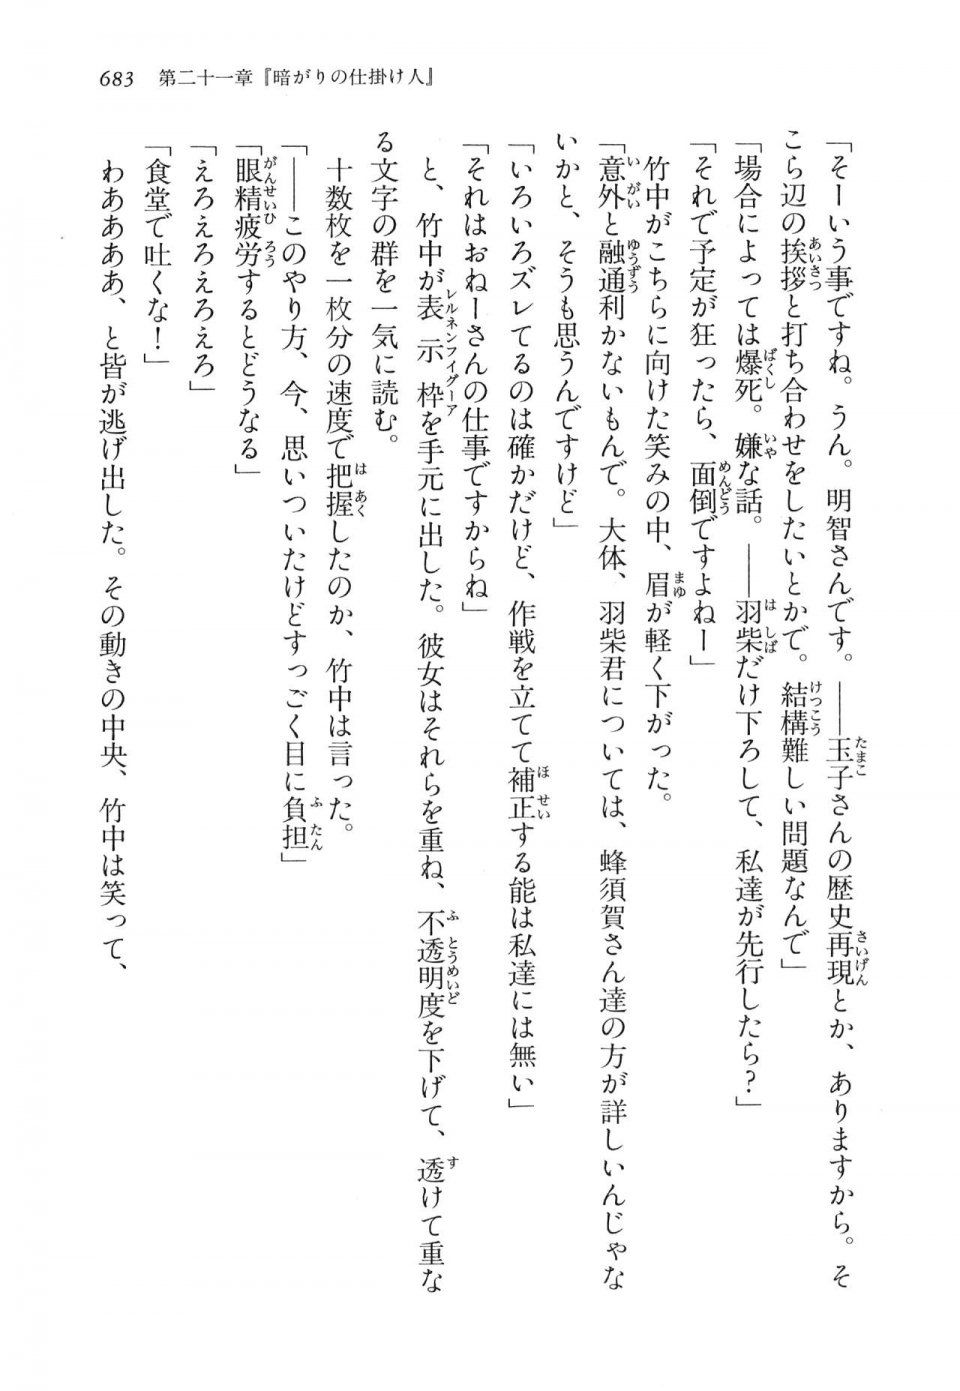 Kyoukai Senjou no Horizon LN Vol 16(7A) - Photo #683